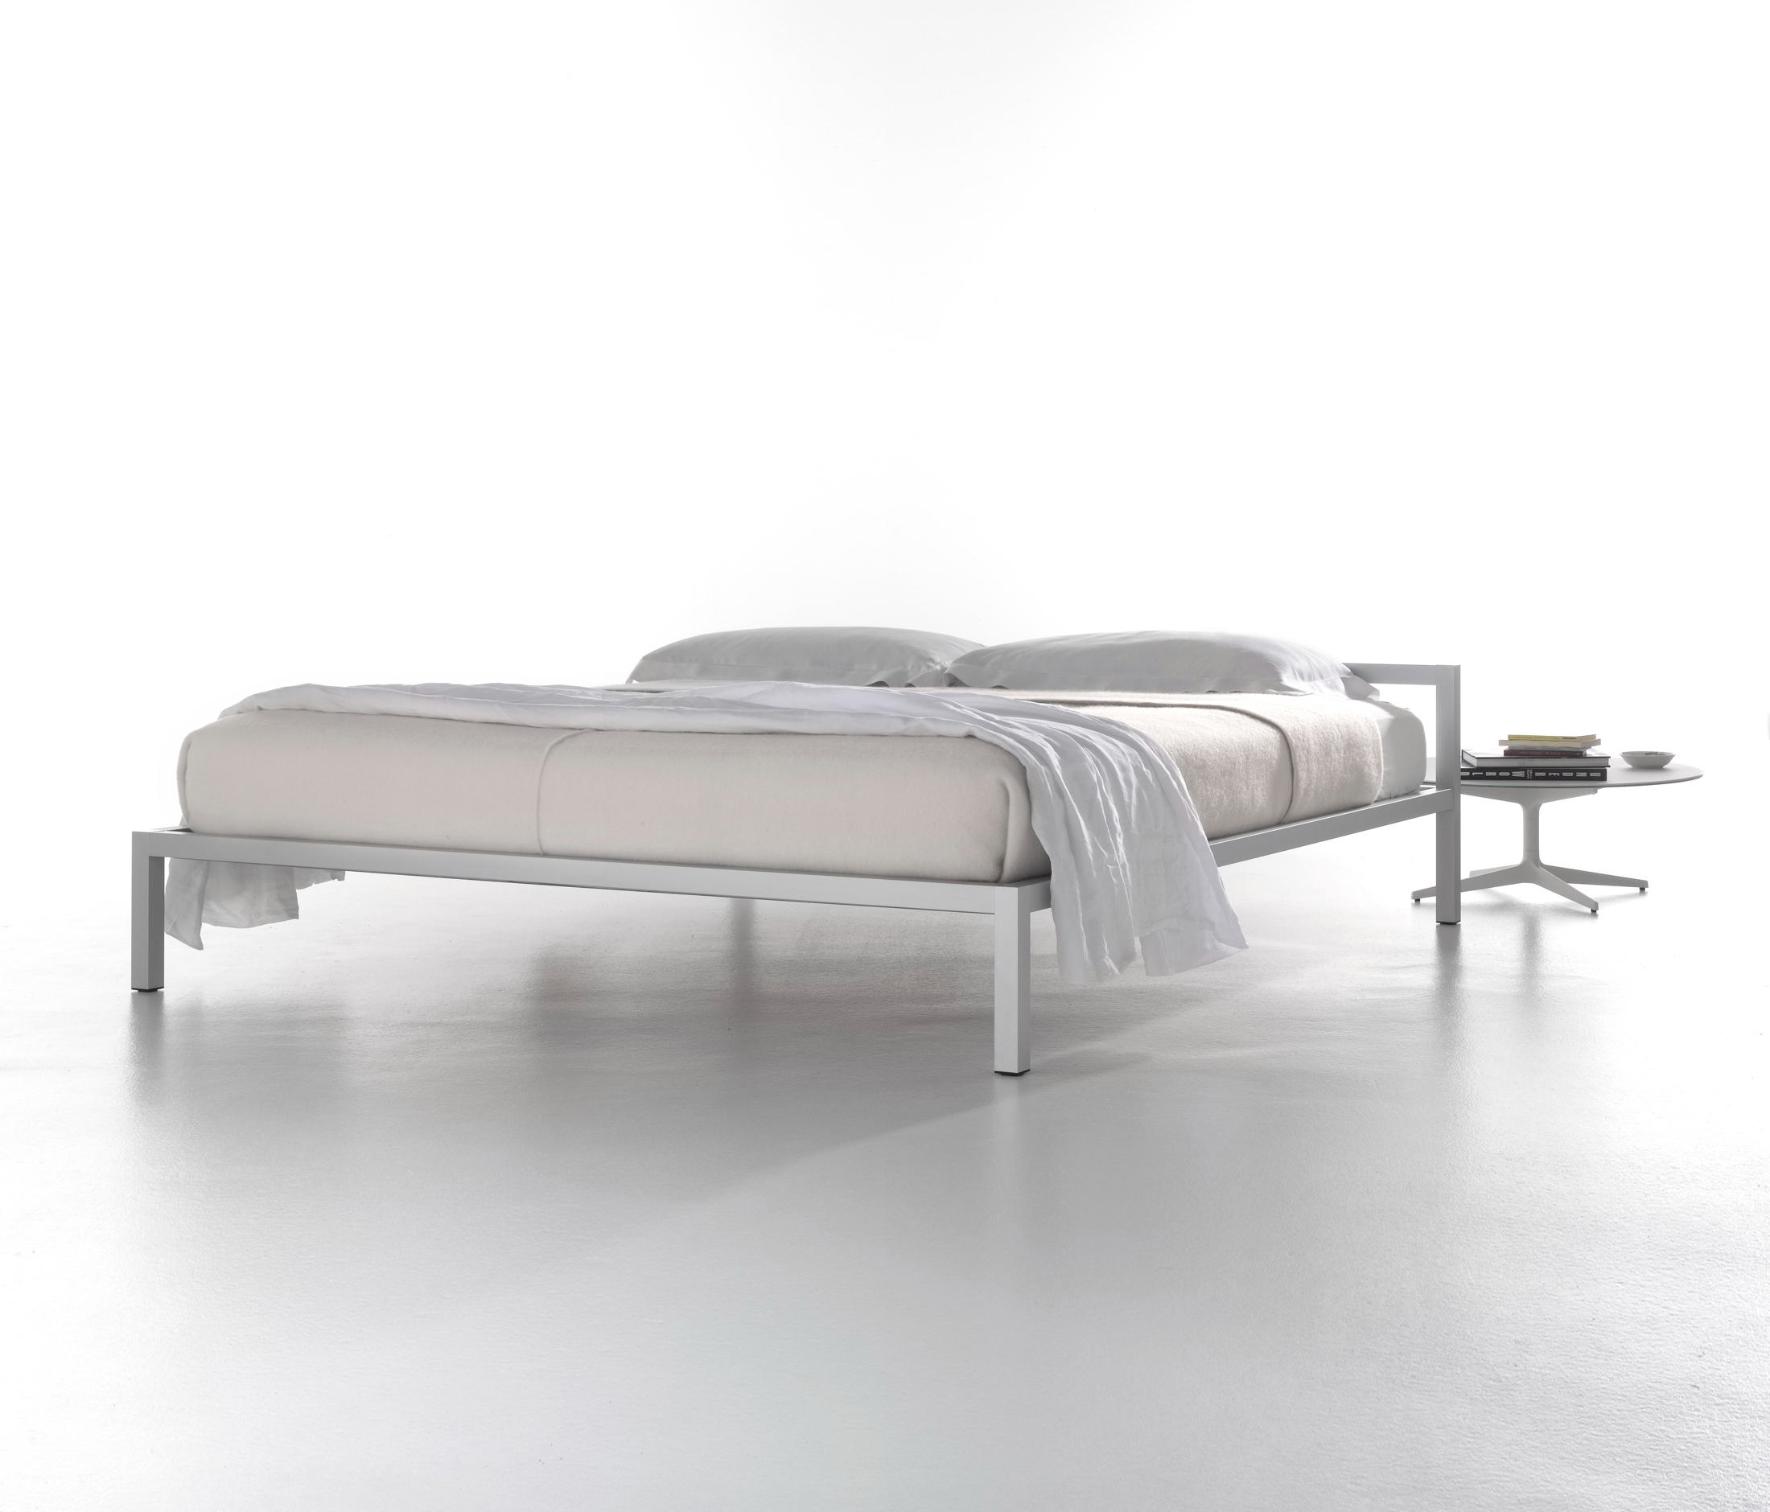 Aluminium Bed with Italian Precision ☞ Structure: Natural Anodized Aluminium X073 ☞ Dimensions: 150 x 210 cm